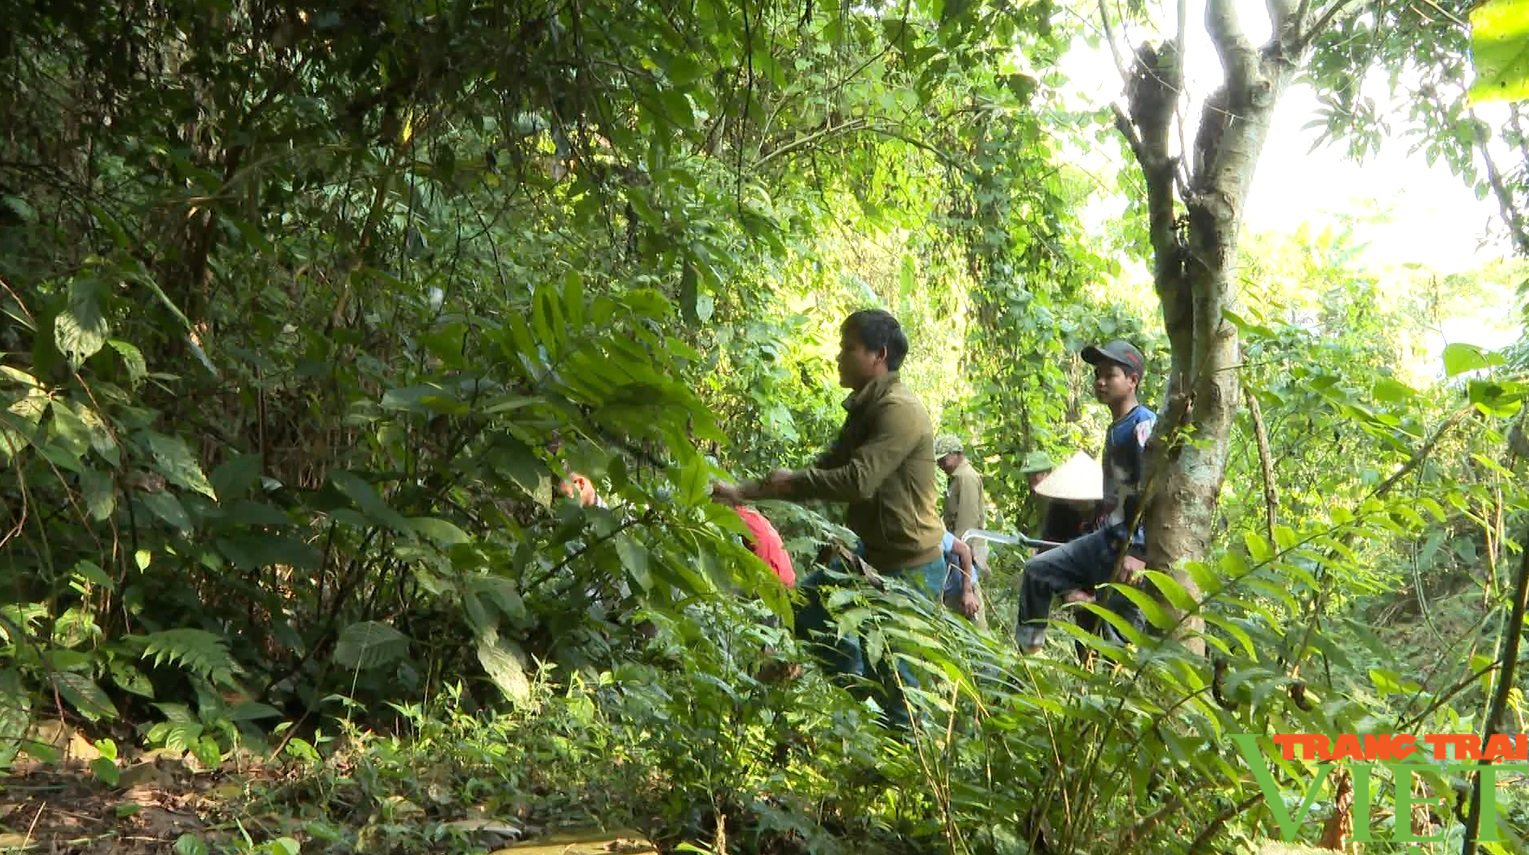 Nông dân vùng biên giới Lai Châu tích cực bảo vệ rừng - Ảnh 2.